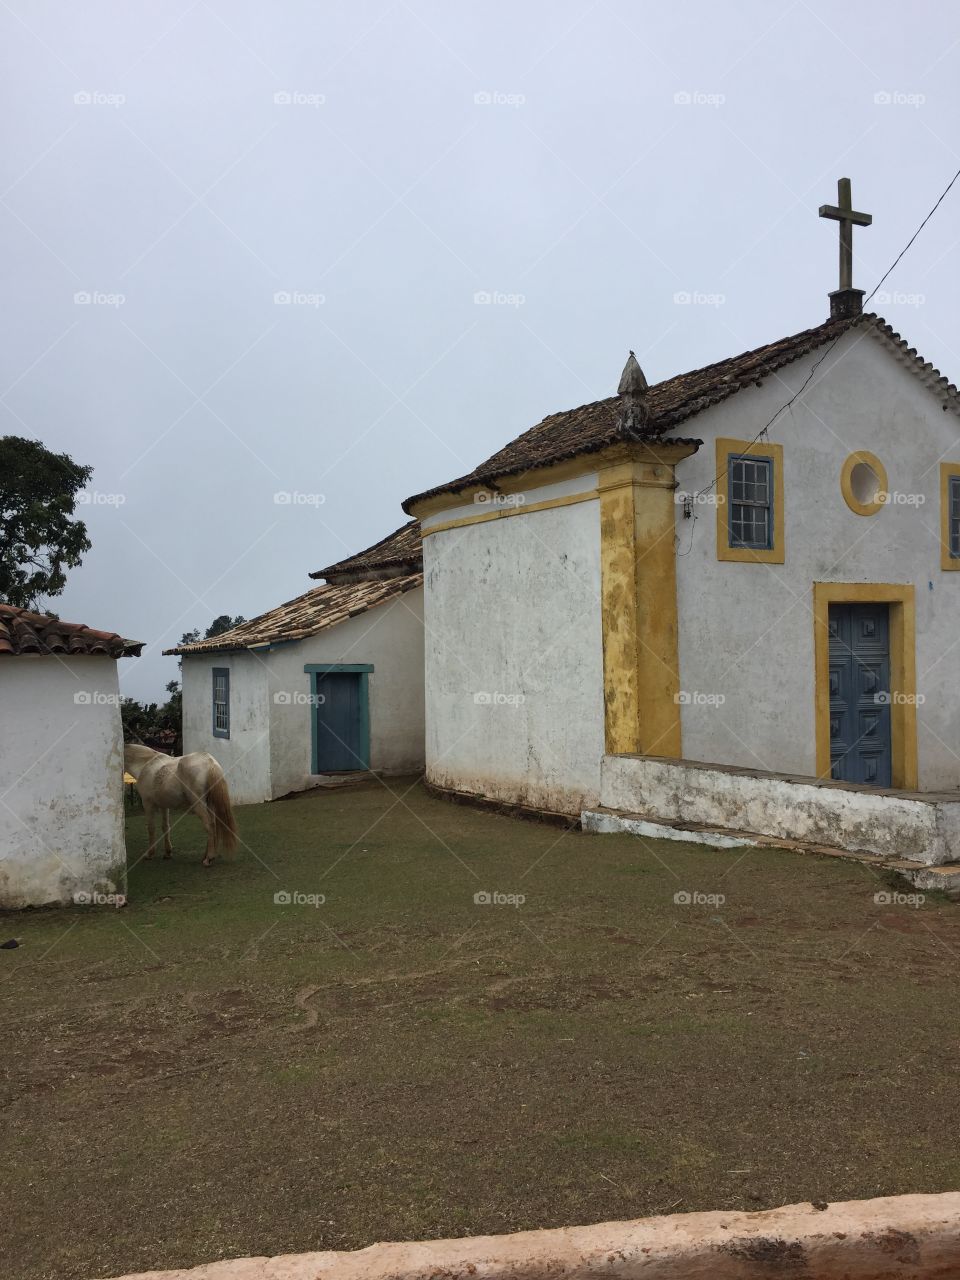 Capela São João do ouro fino, Brasil